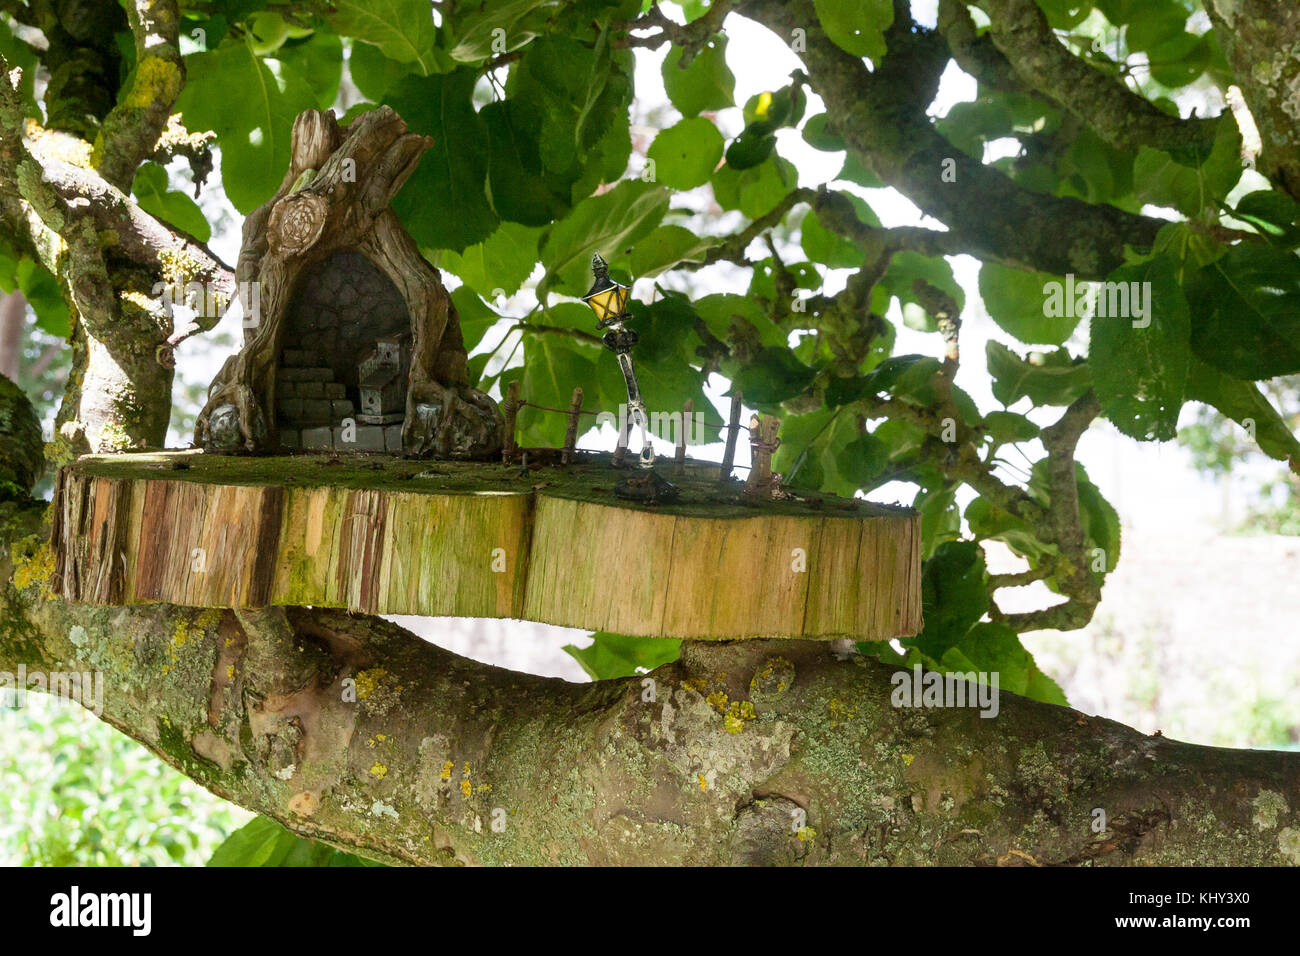 Holz- fee Haus mit Lamp Post auf einer Plattform auf dem Ast eines Baumes in einem märchenhaften Garten platziert, Irland Stockfoto